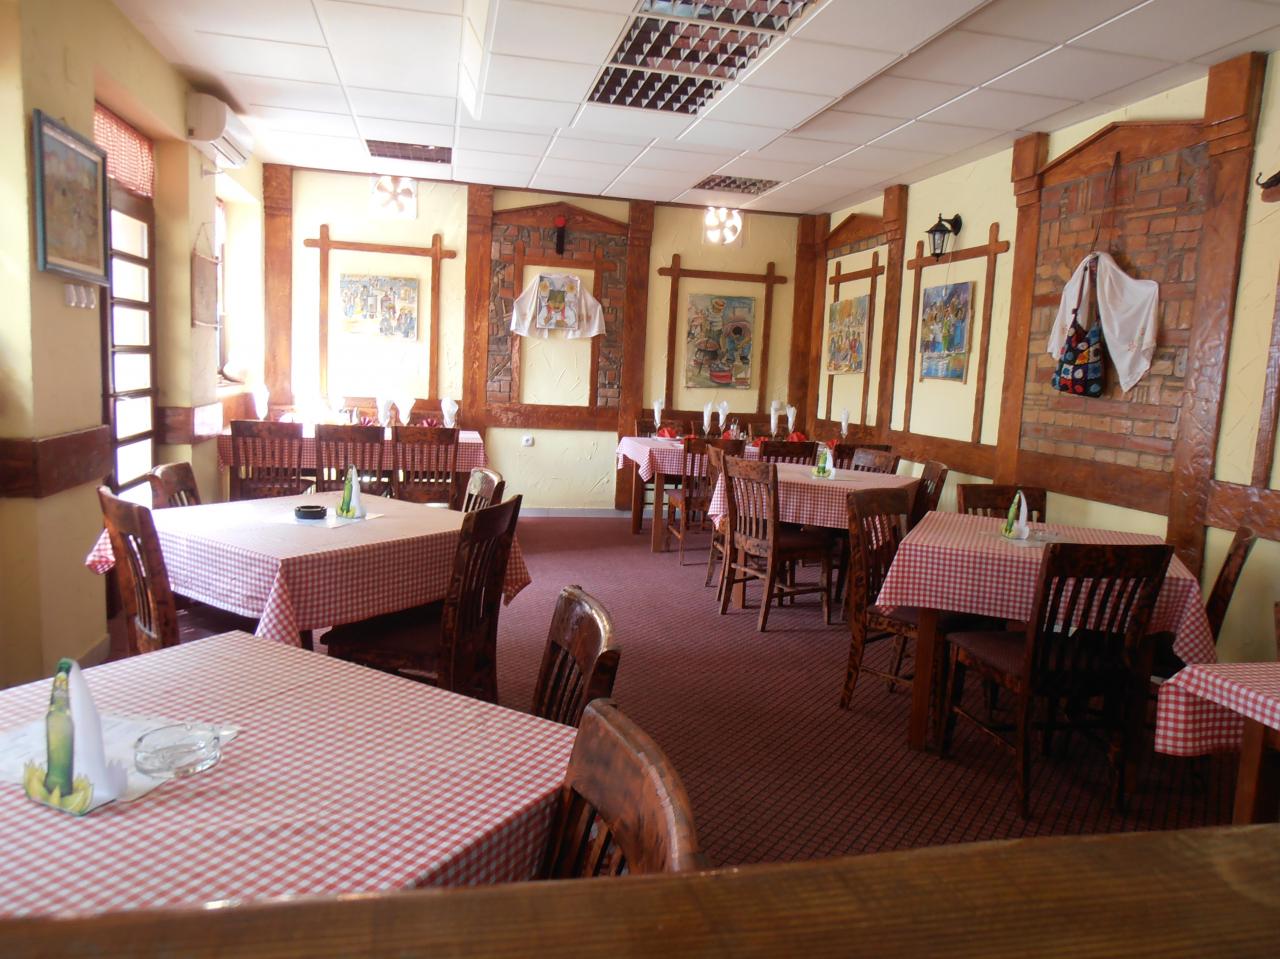 Slika 7 - RESTORAN KLUB S - Restorani, Ruma